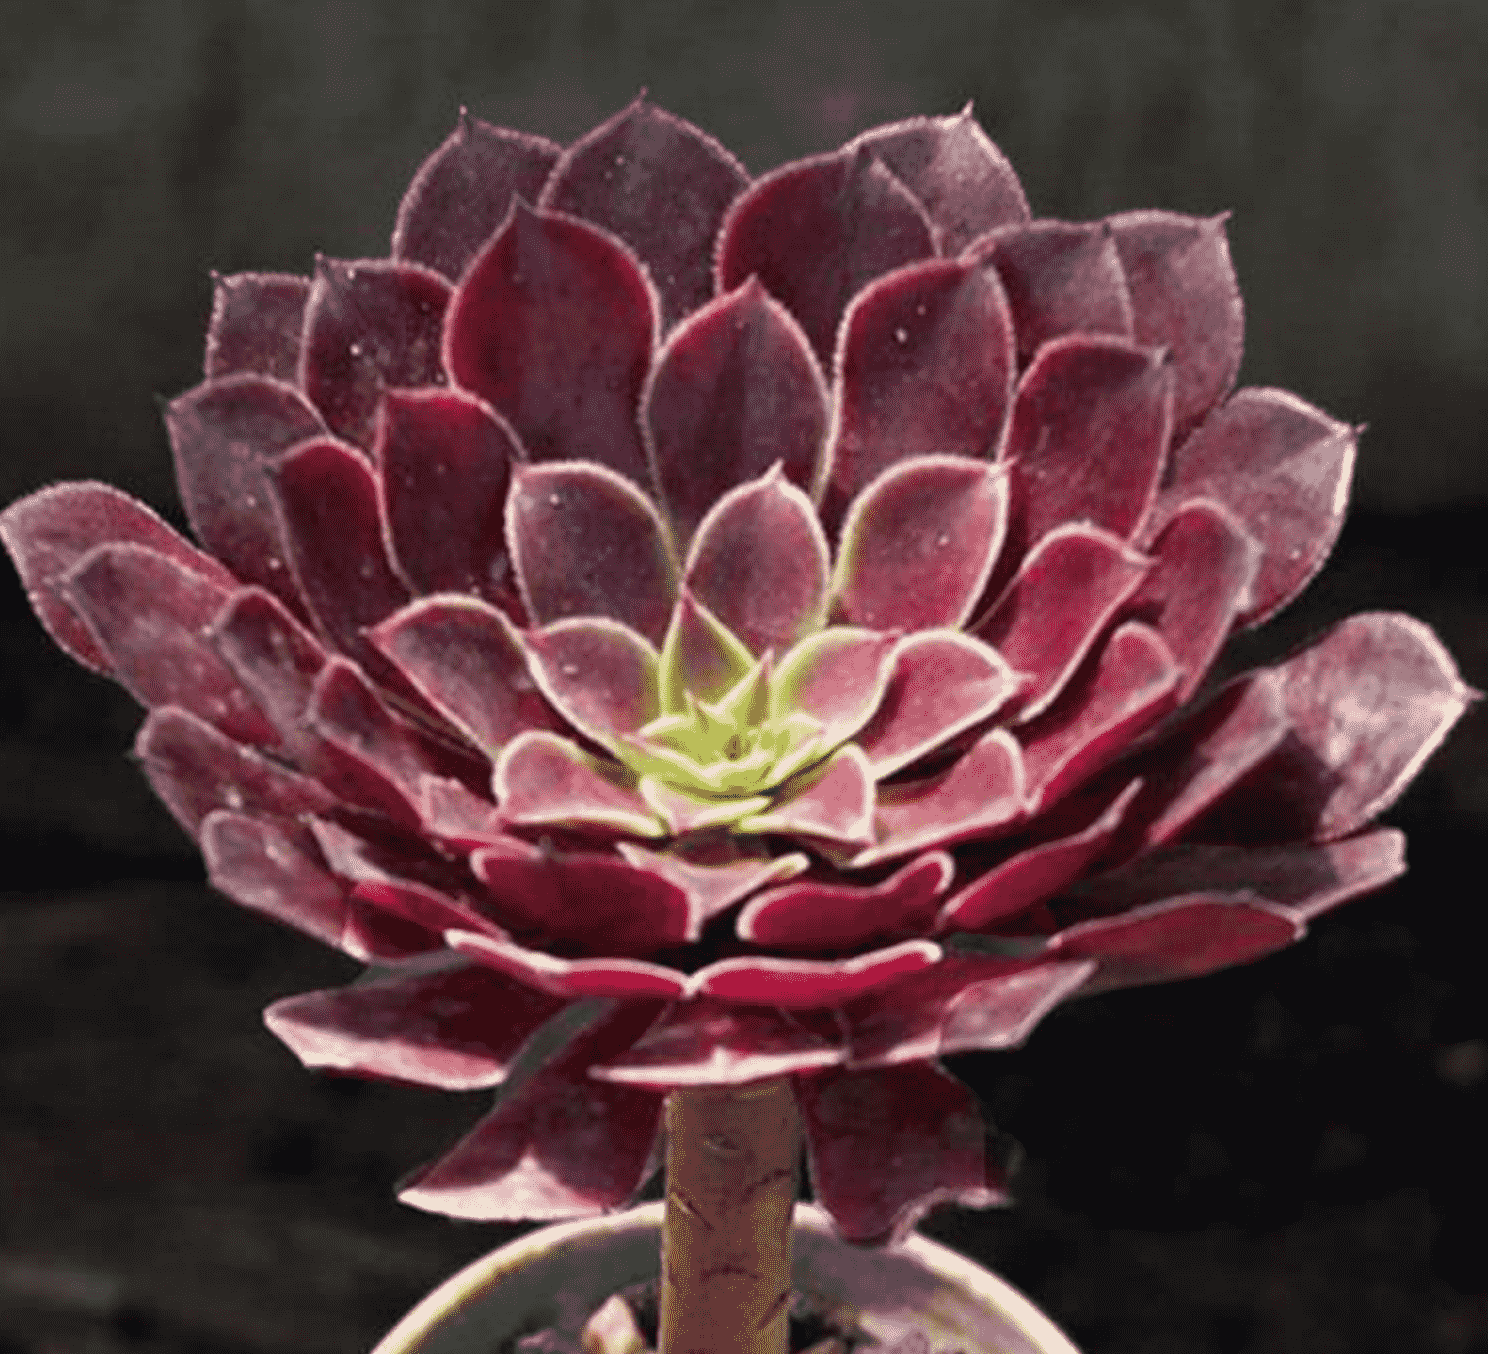 Aeonium ZWARTKIN Hybrid Succulent Cutting FRESH CUT & HEALTHY 